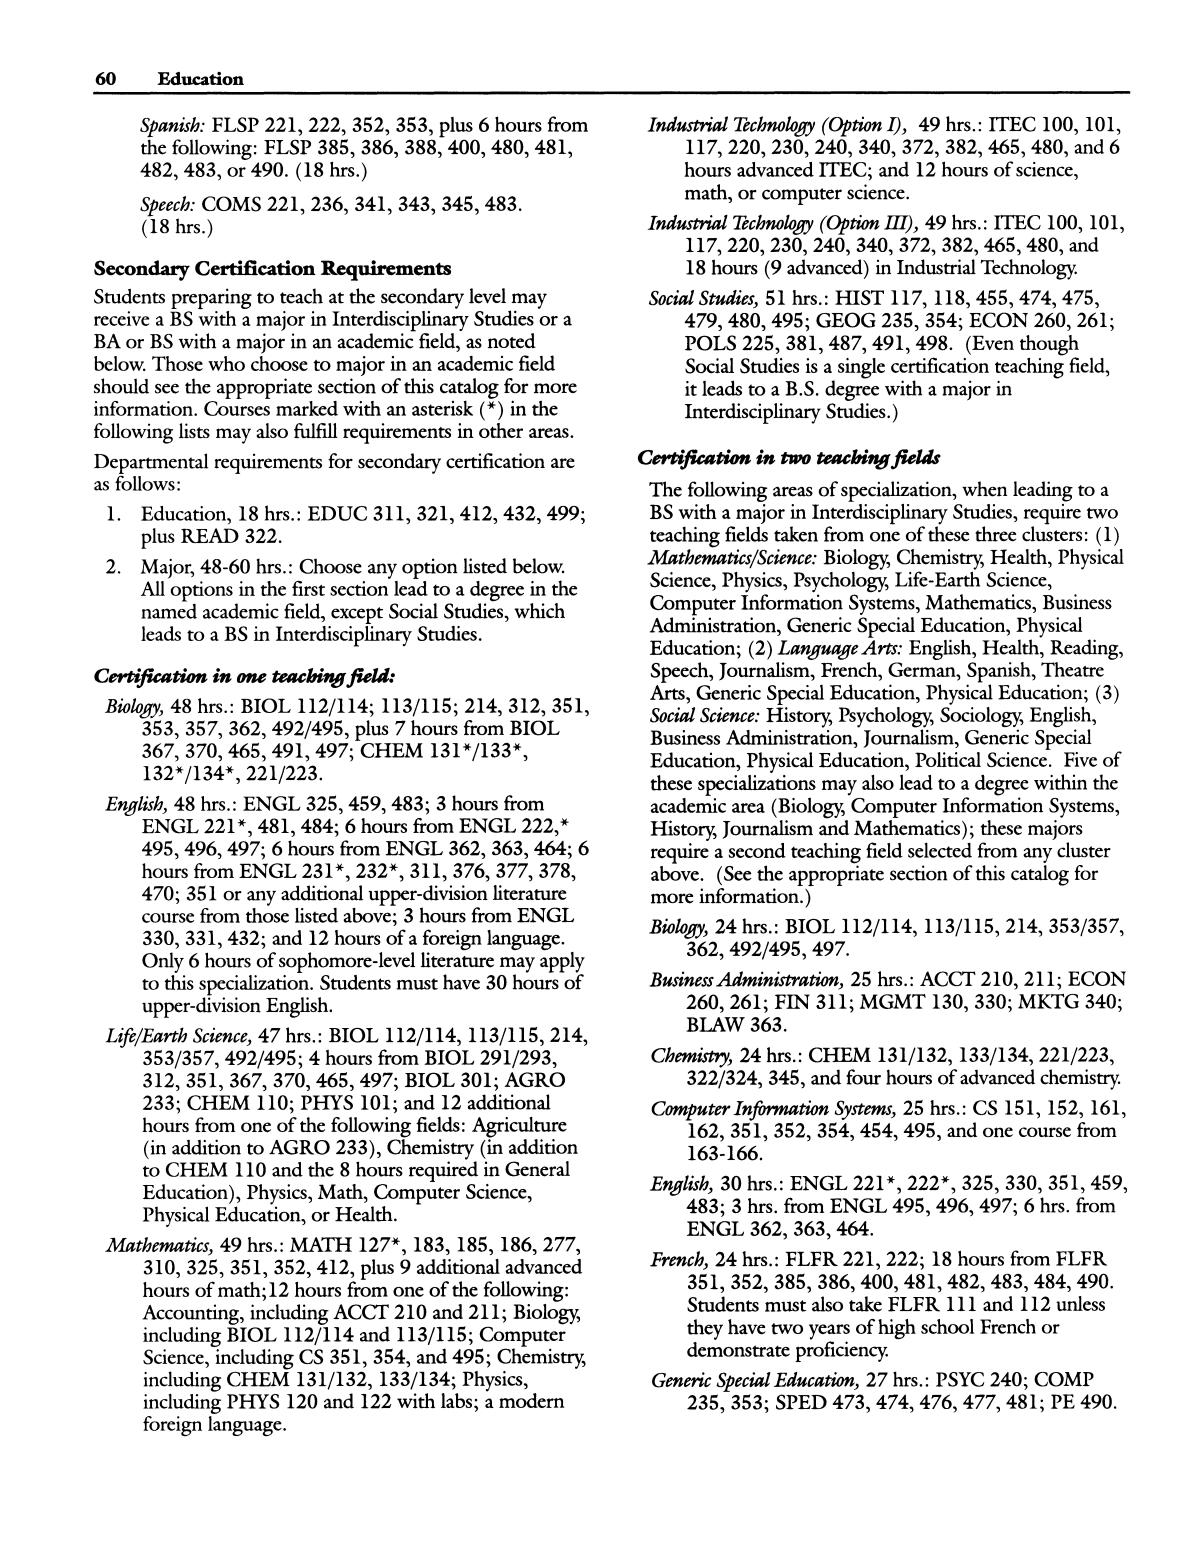 Catalog of Abilene Christian University, 1994-1995
                                                
                                                    60
                                                